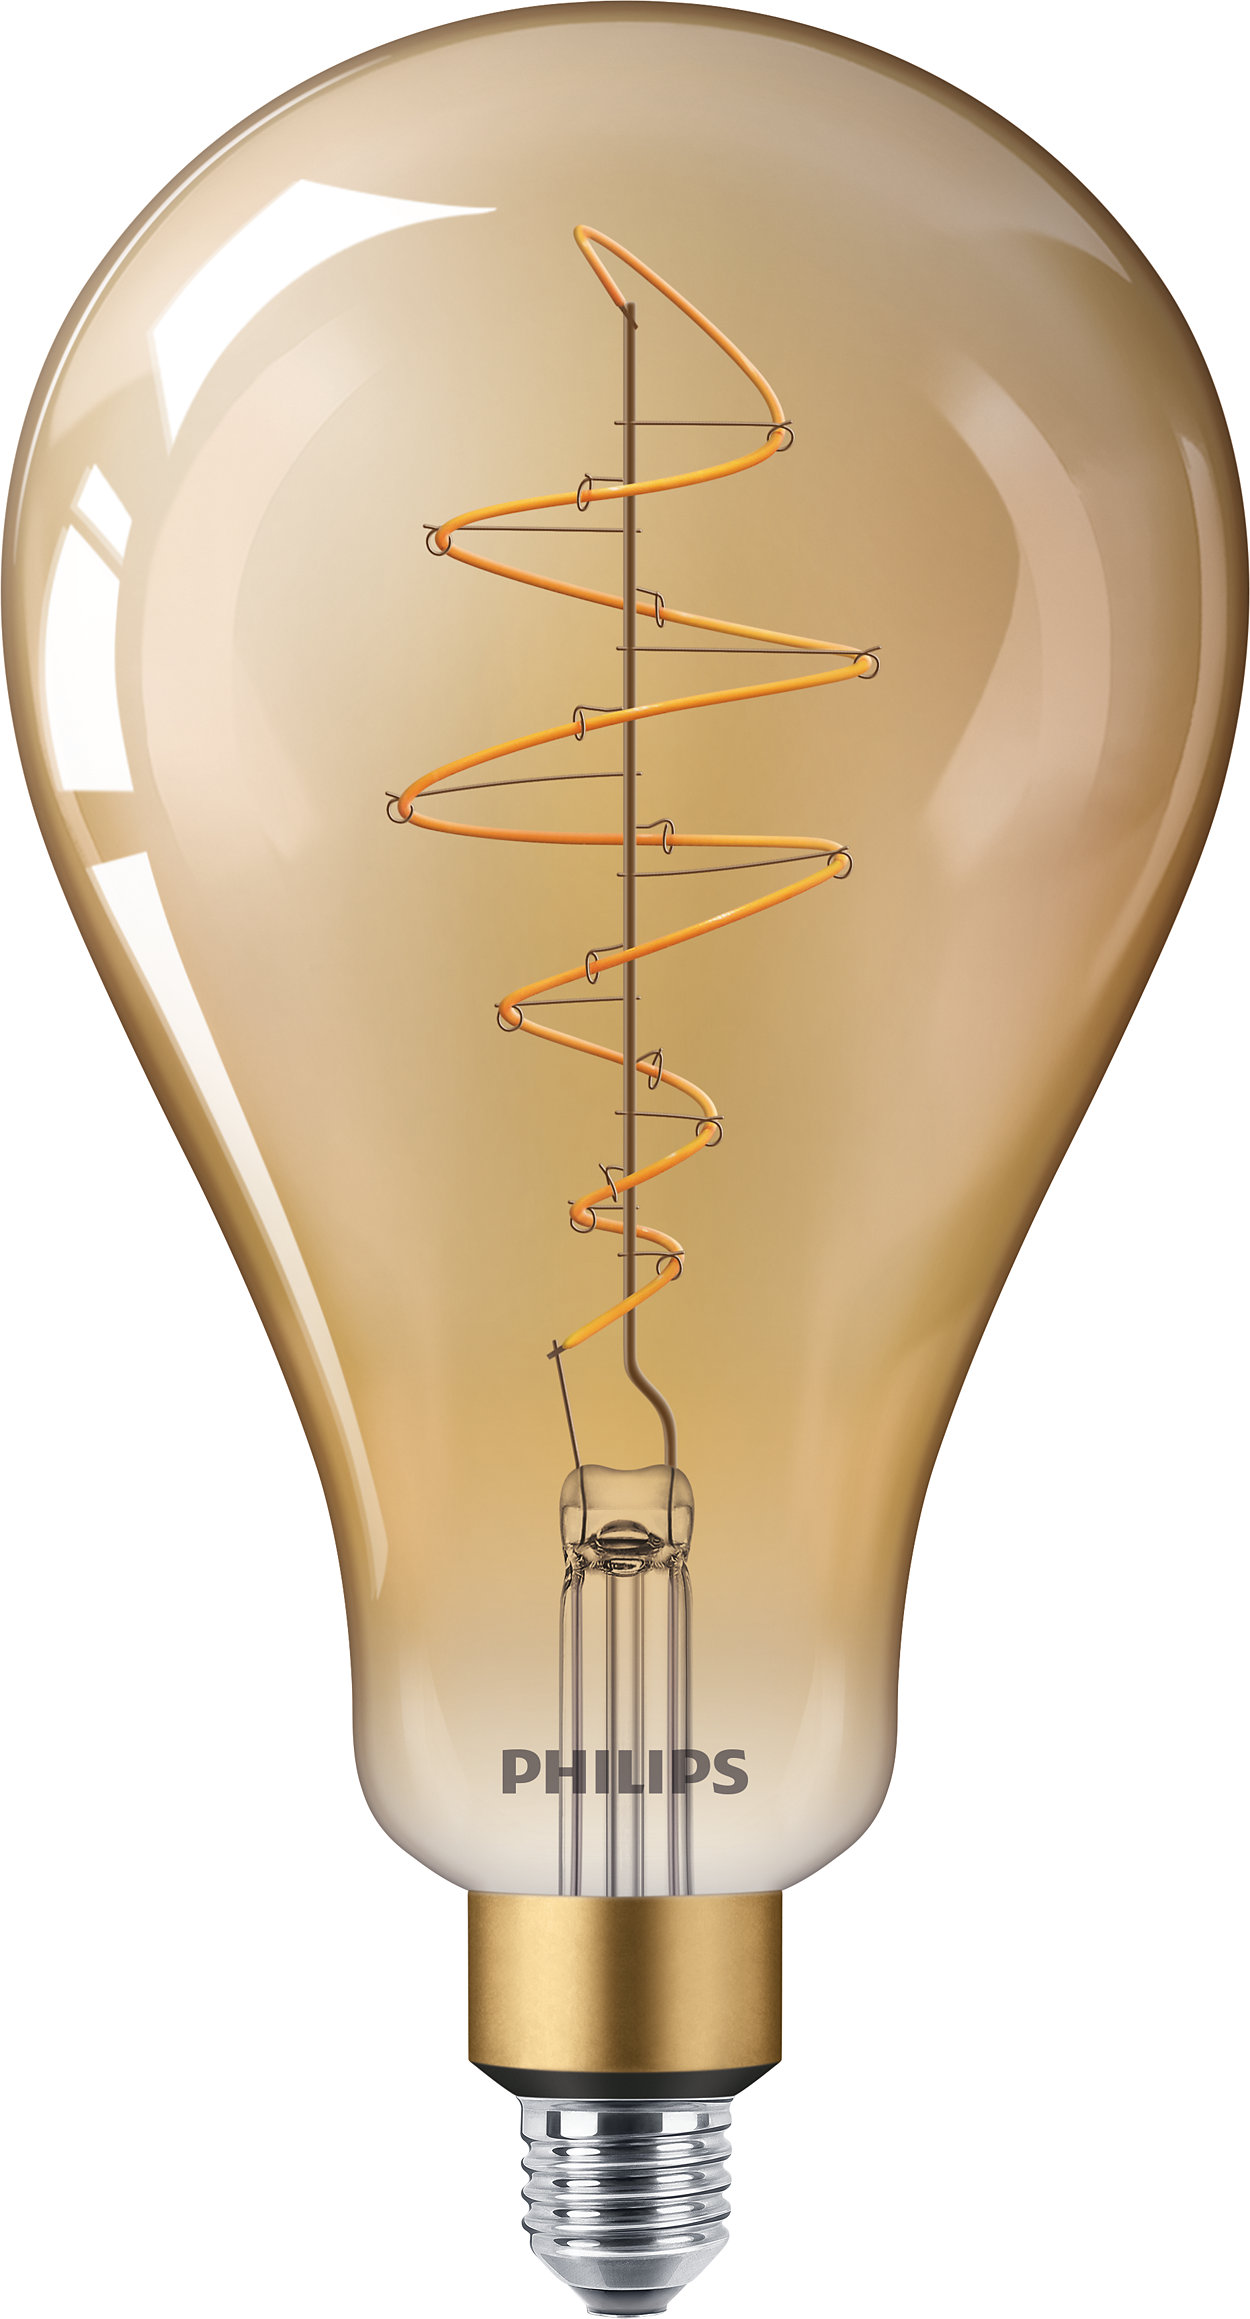 Philips Classic LED-gloeidraadlampen voor decoratieve verlichting.